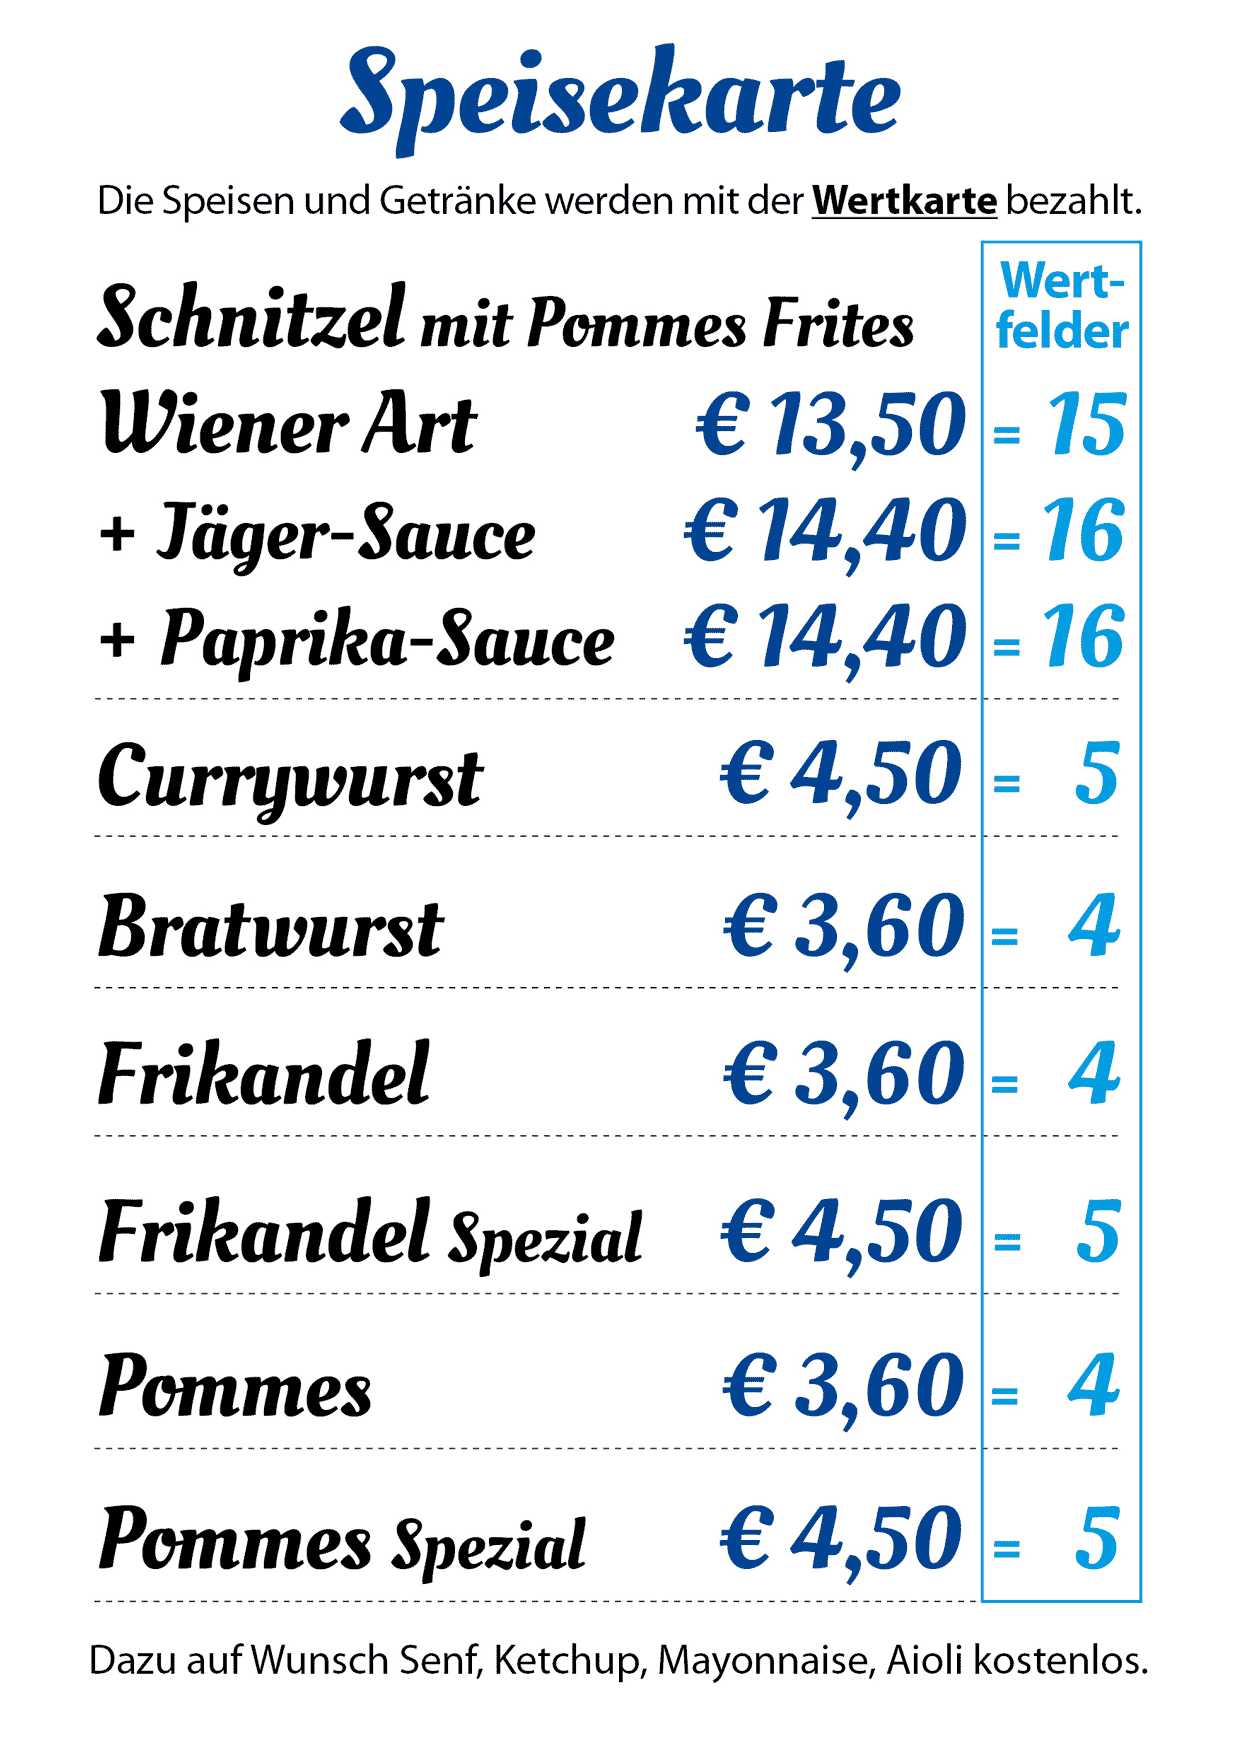 Speisekarte und Preise